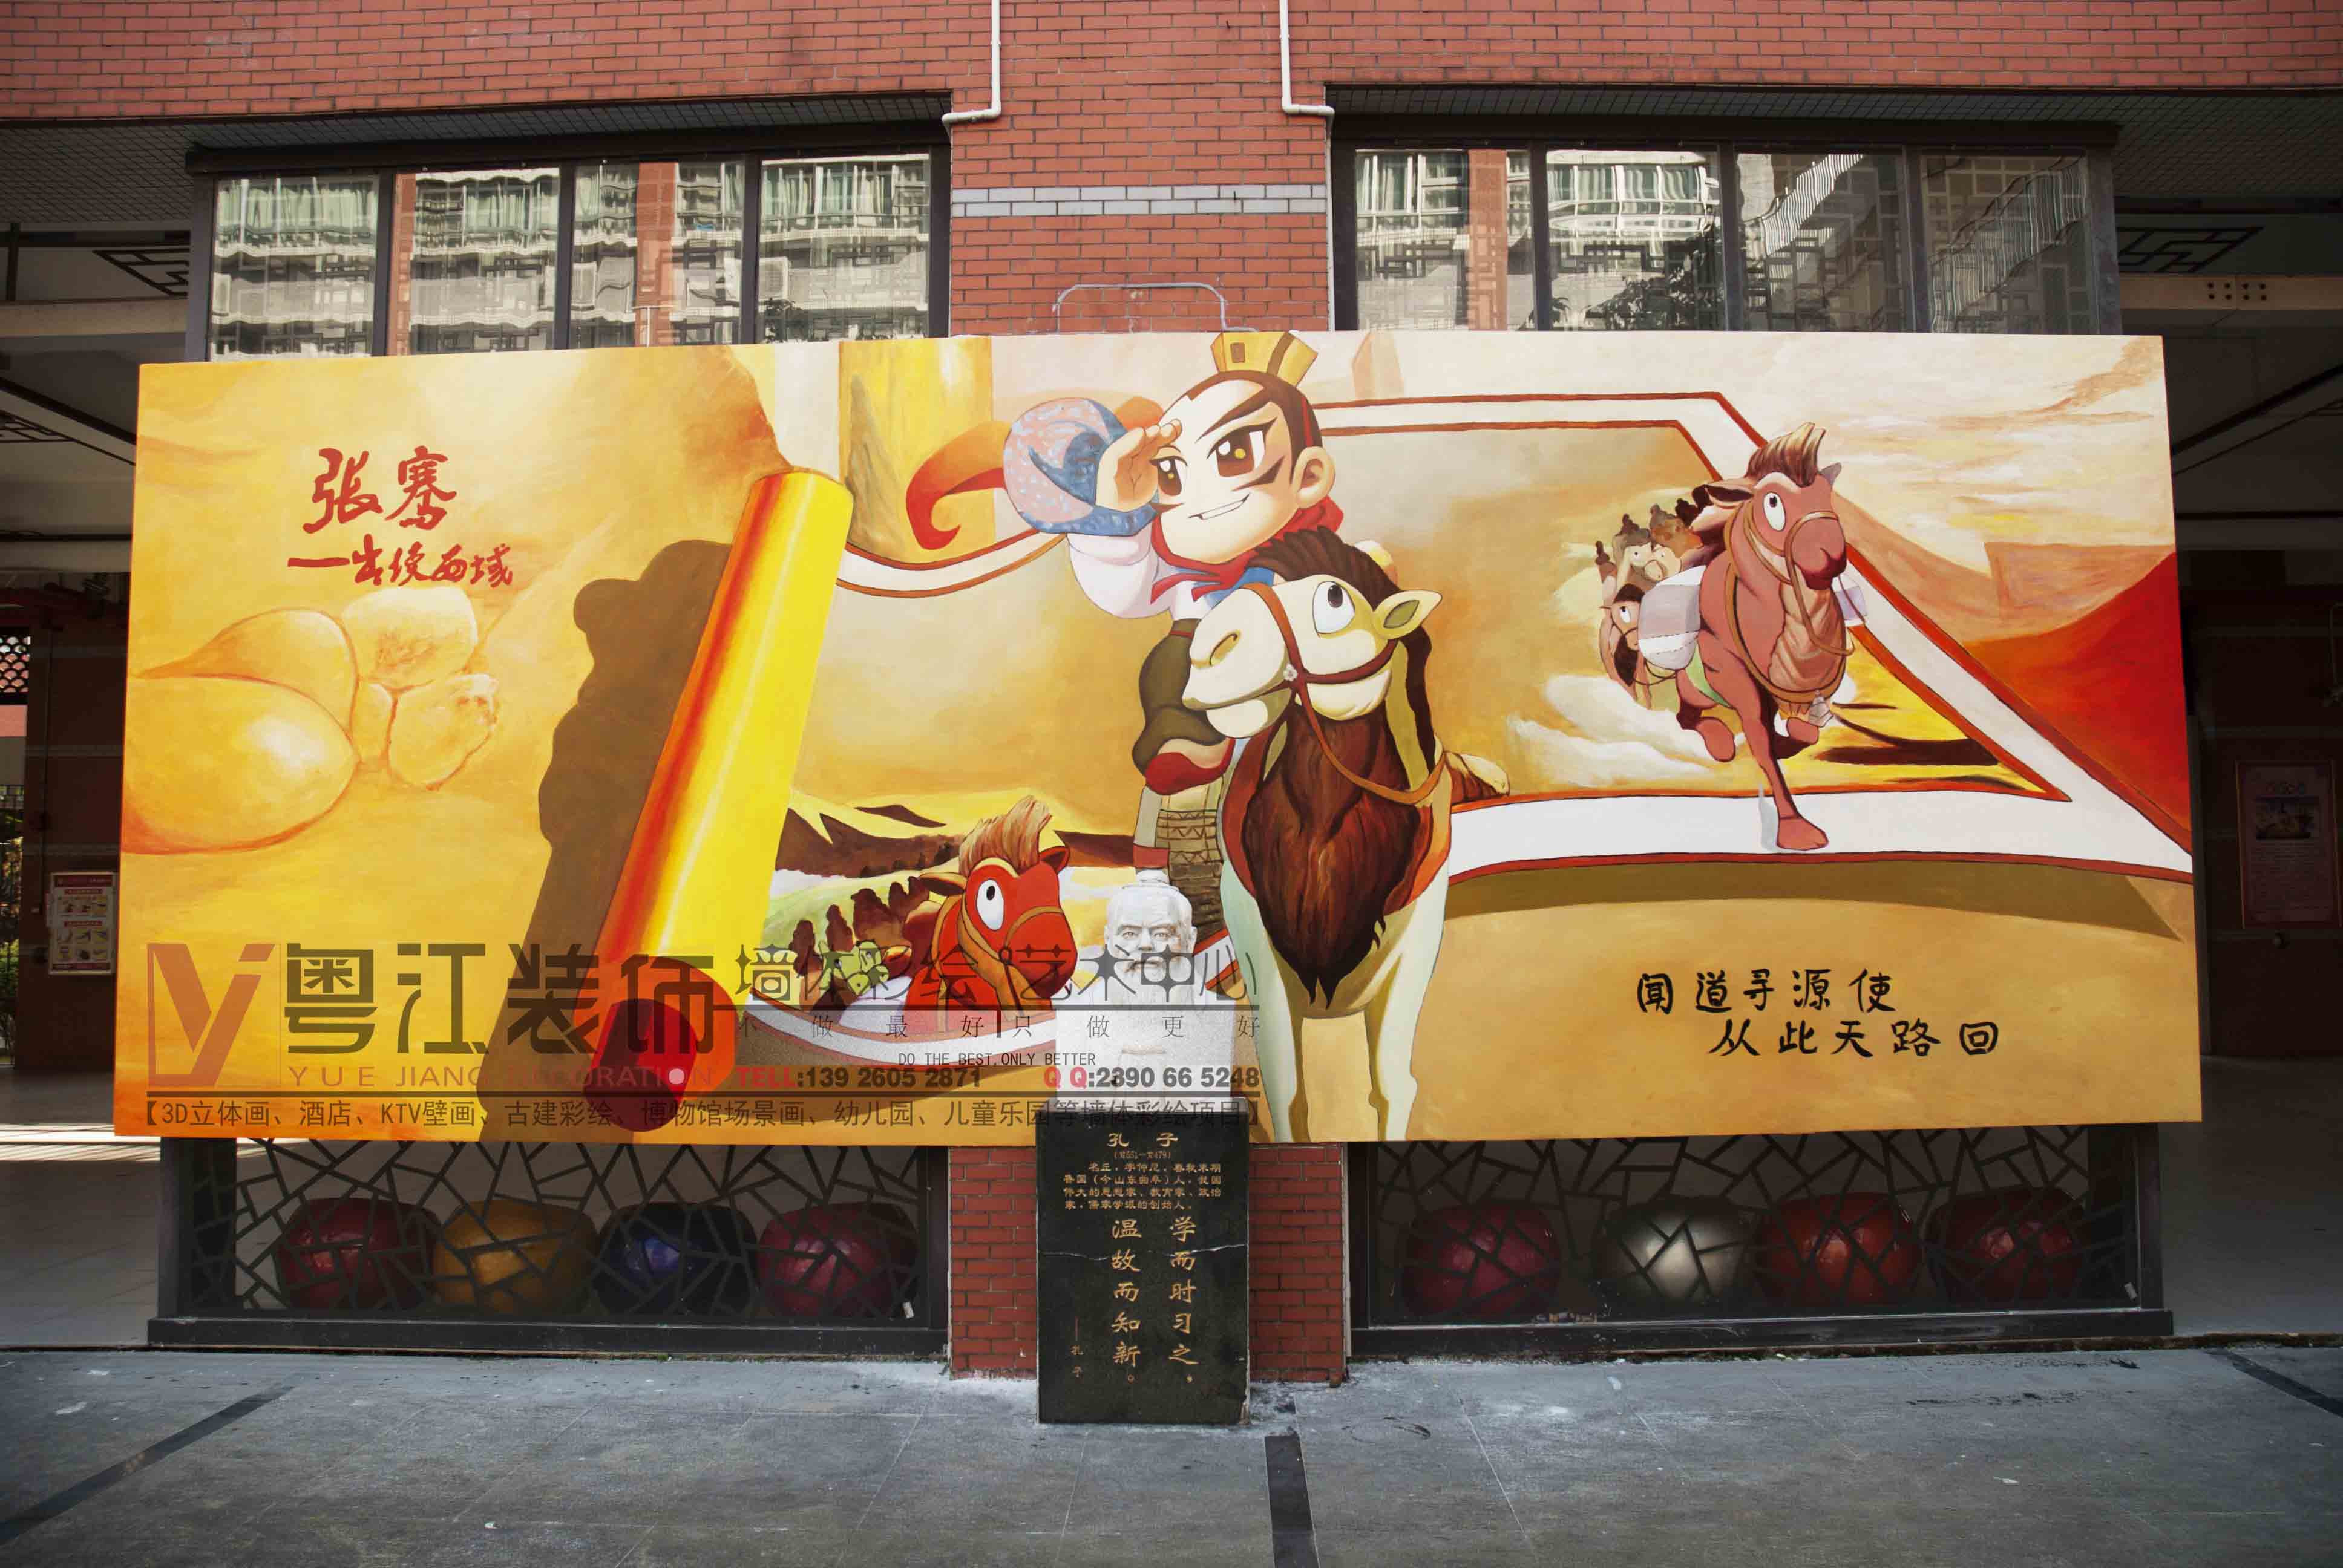 广东深圳学校文化3D壁画正式运用到教学中